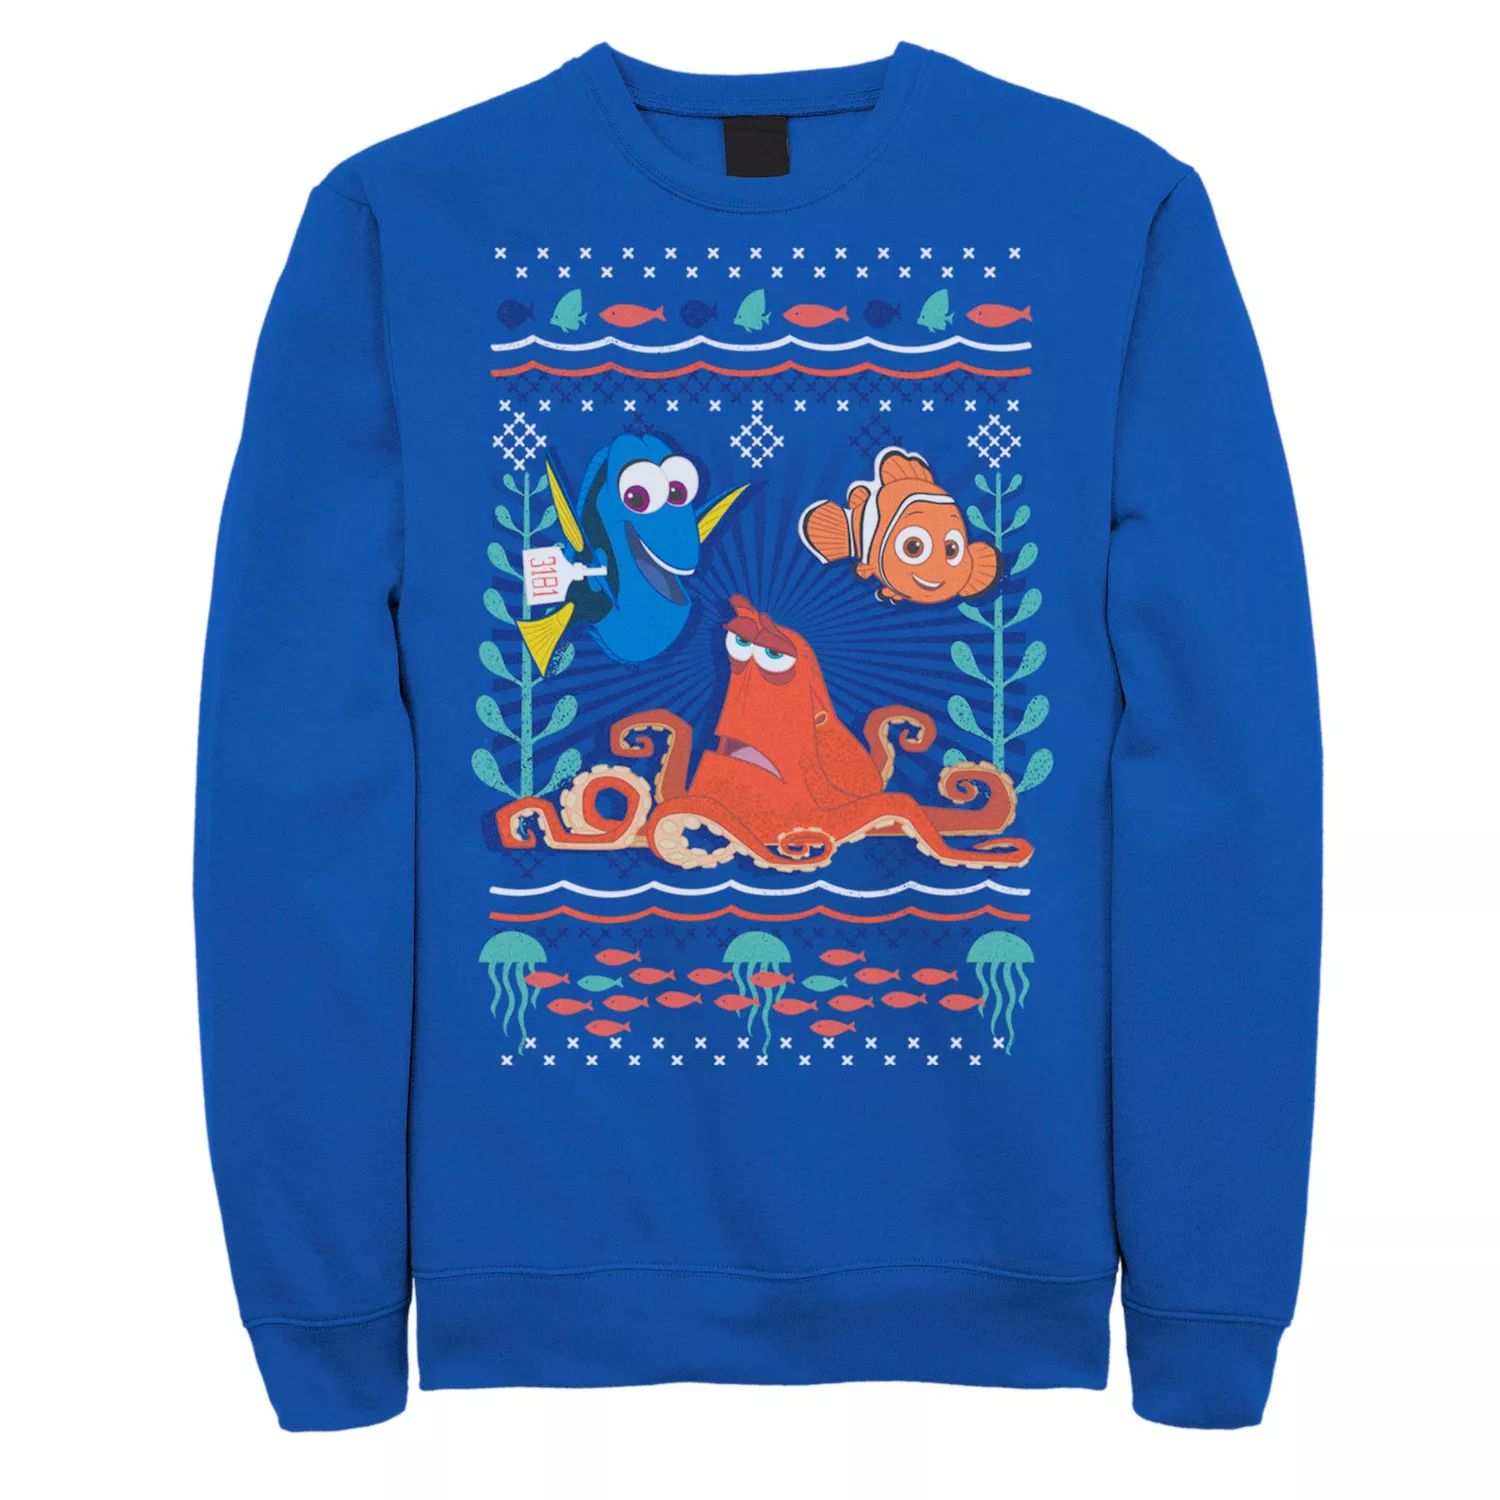 Мужской свитер 's Finding Dory Hank Nemo Dory Ugly, флисовый пуловер с графическим рисунком Disney / Pixar